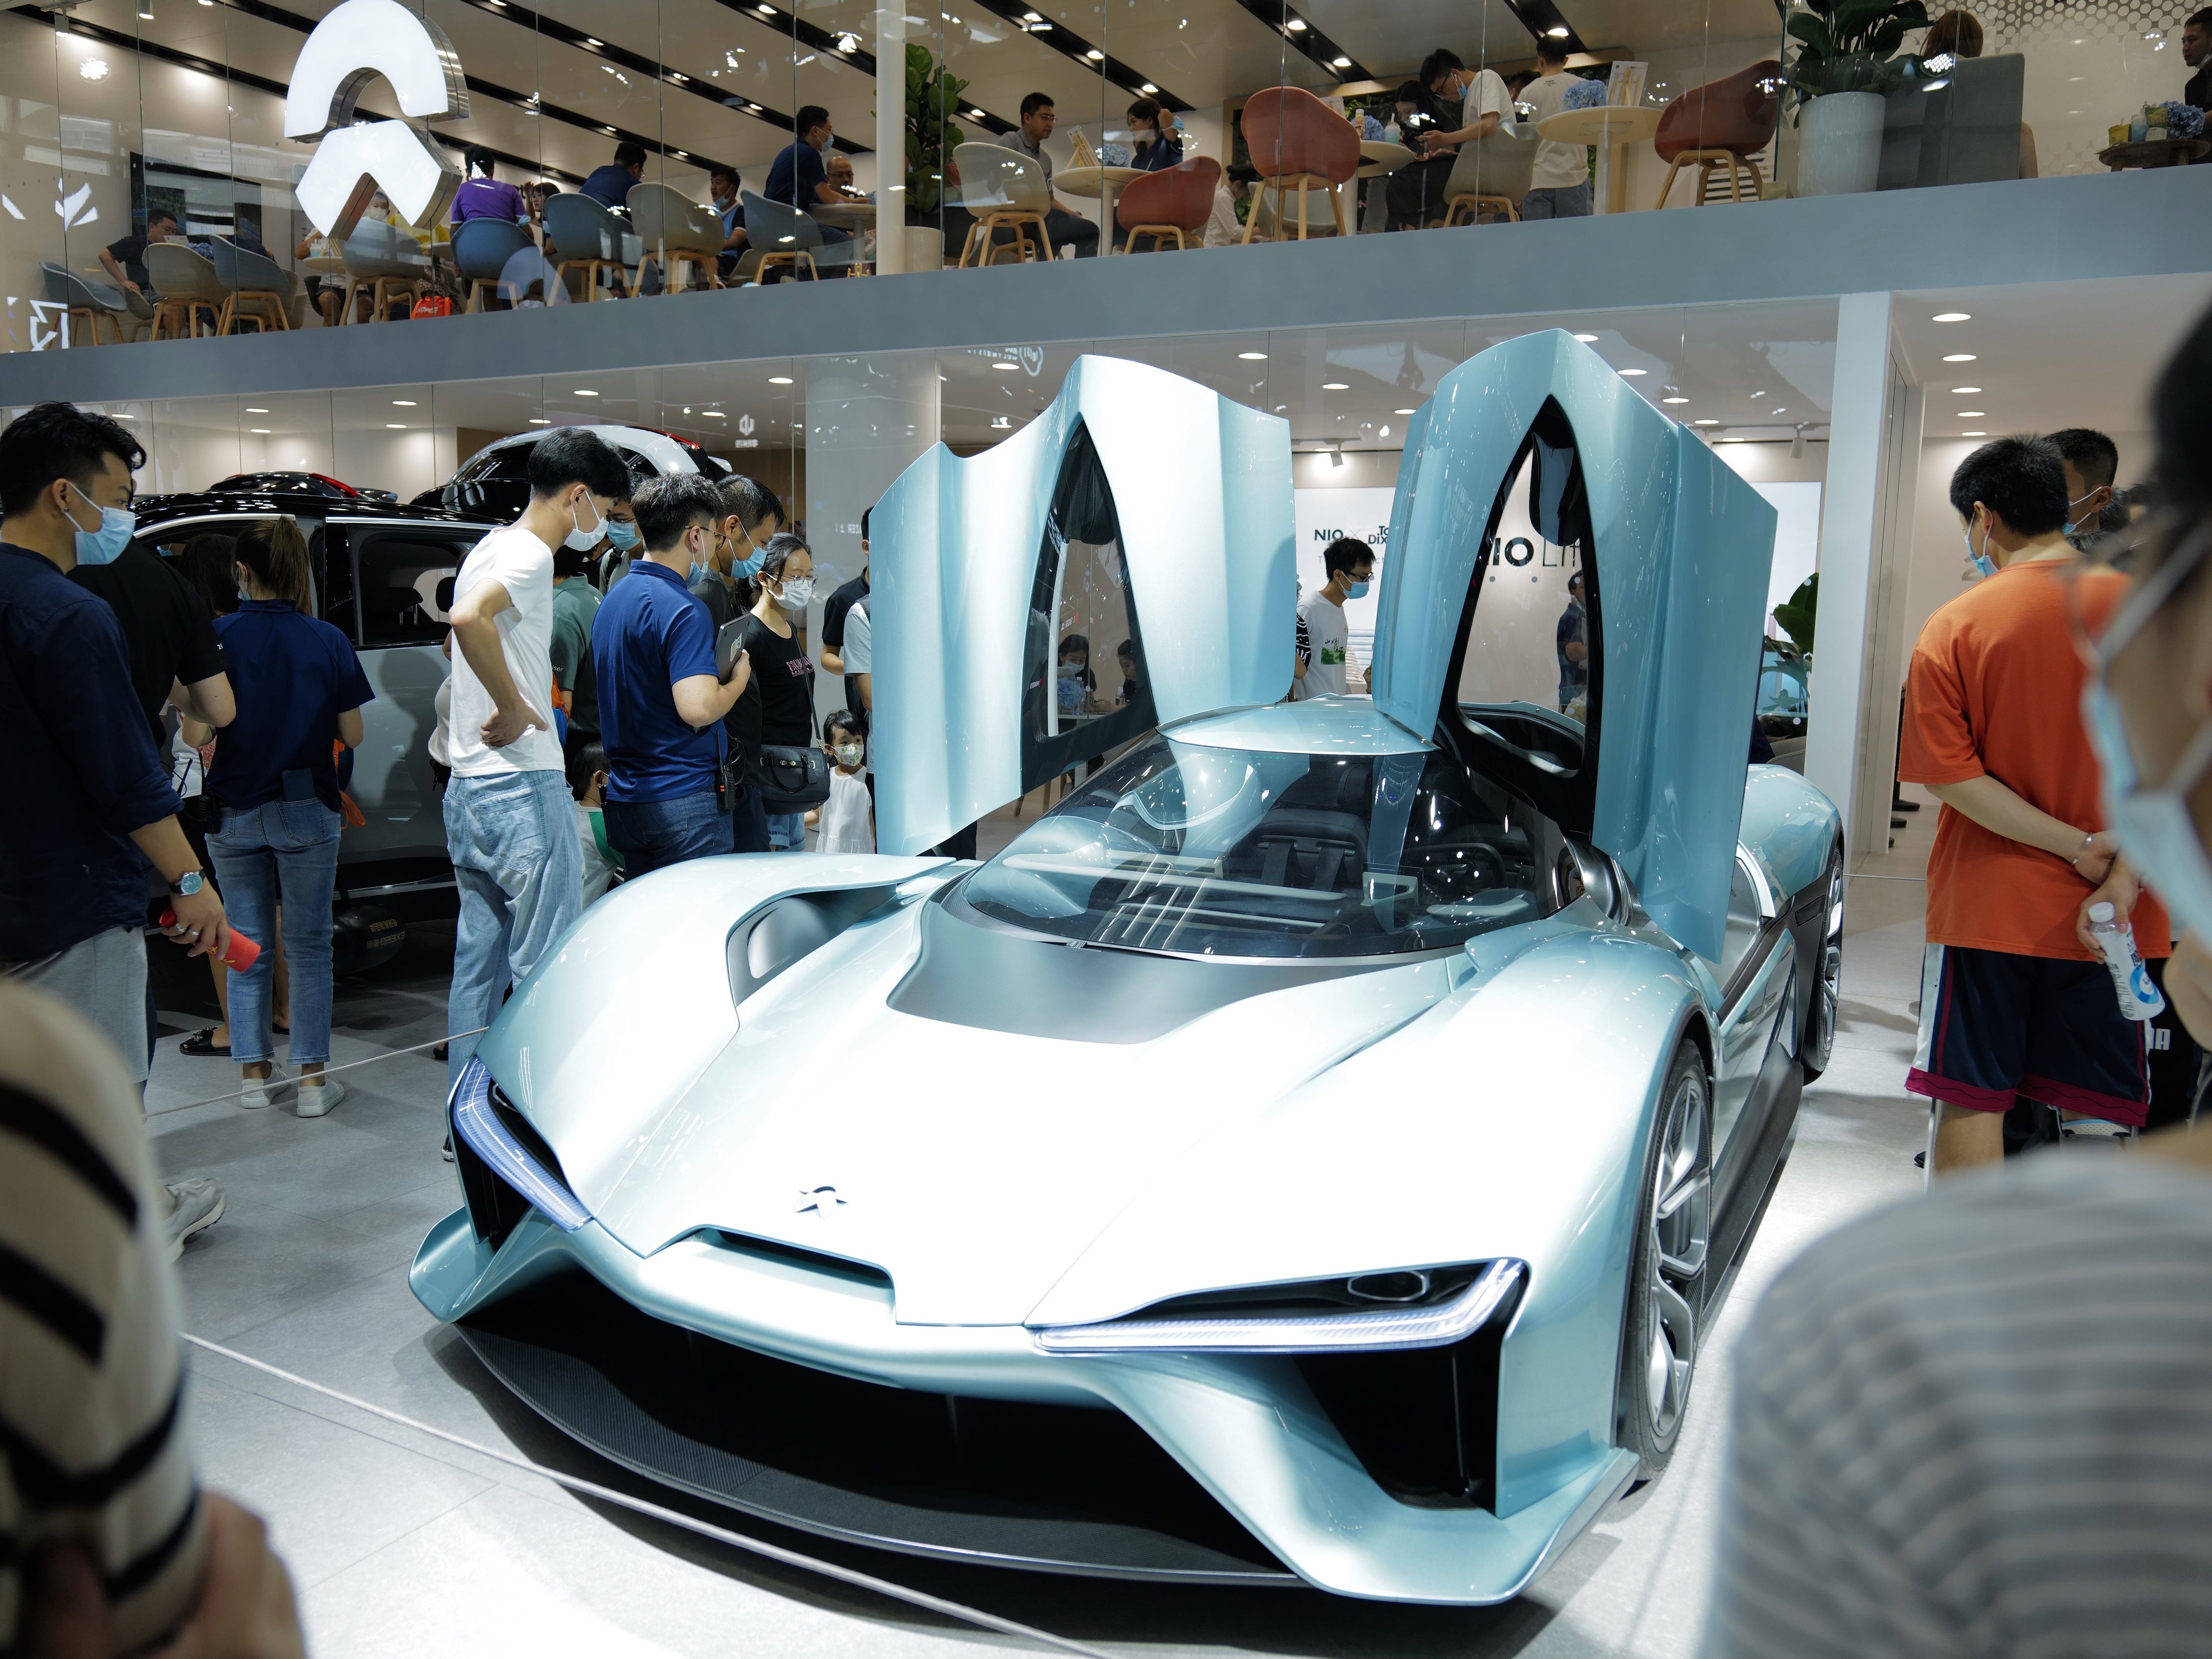 Pojazd elektryczny NIO EP9 jest prezentowany podczas Międzynarodowego Salonu Samochodowego Guangdong-Hongkong-Macao Greater Bay Area 2021 w Shenzhen Convention and Exhibition Centre 17 lipca 2021 r. w Shenzhen w prowincji Guangdong w Chinach.